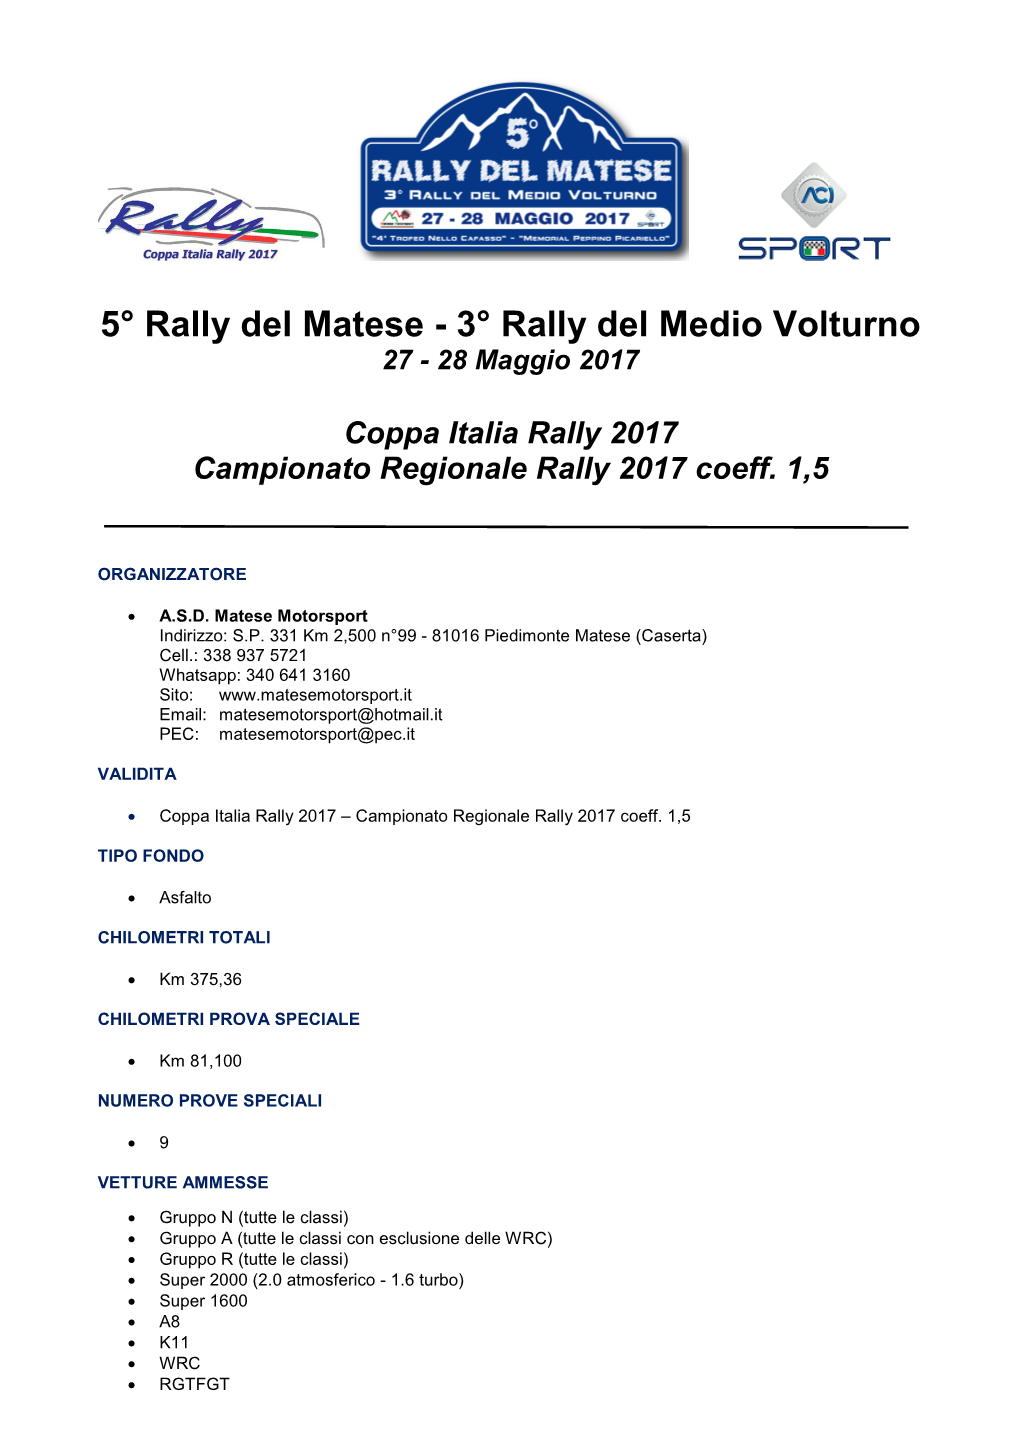 3° Rally Del Medio Volturno 27 - 28 Maggio 2017